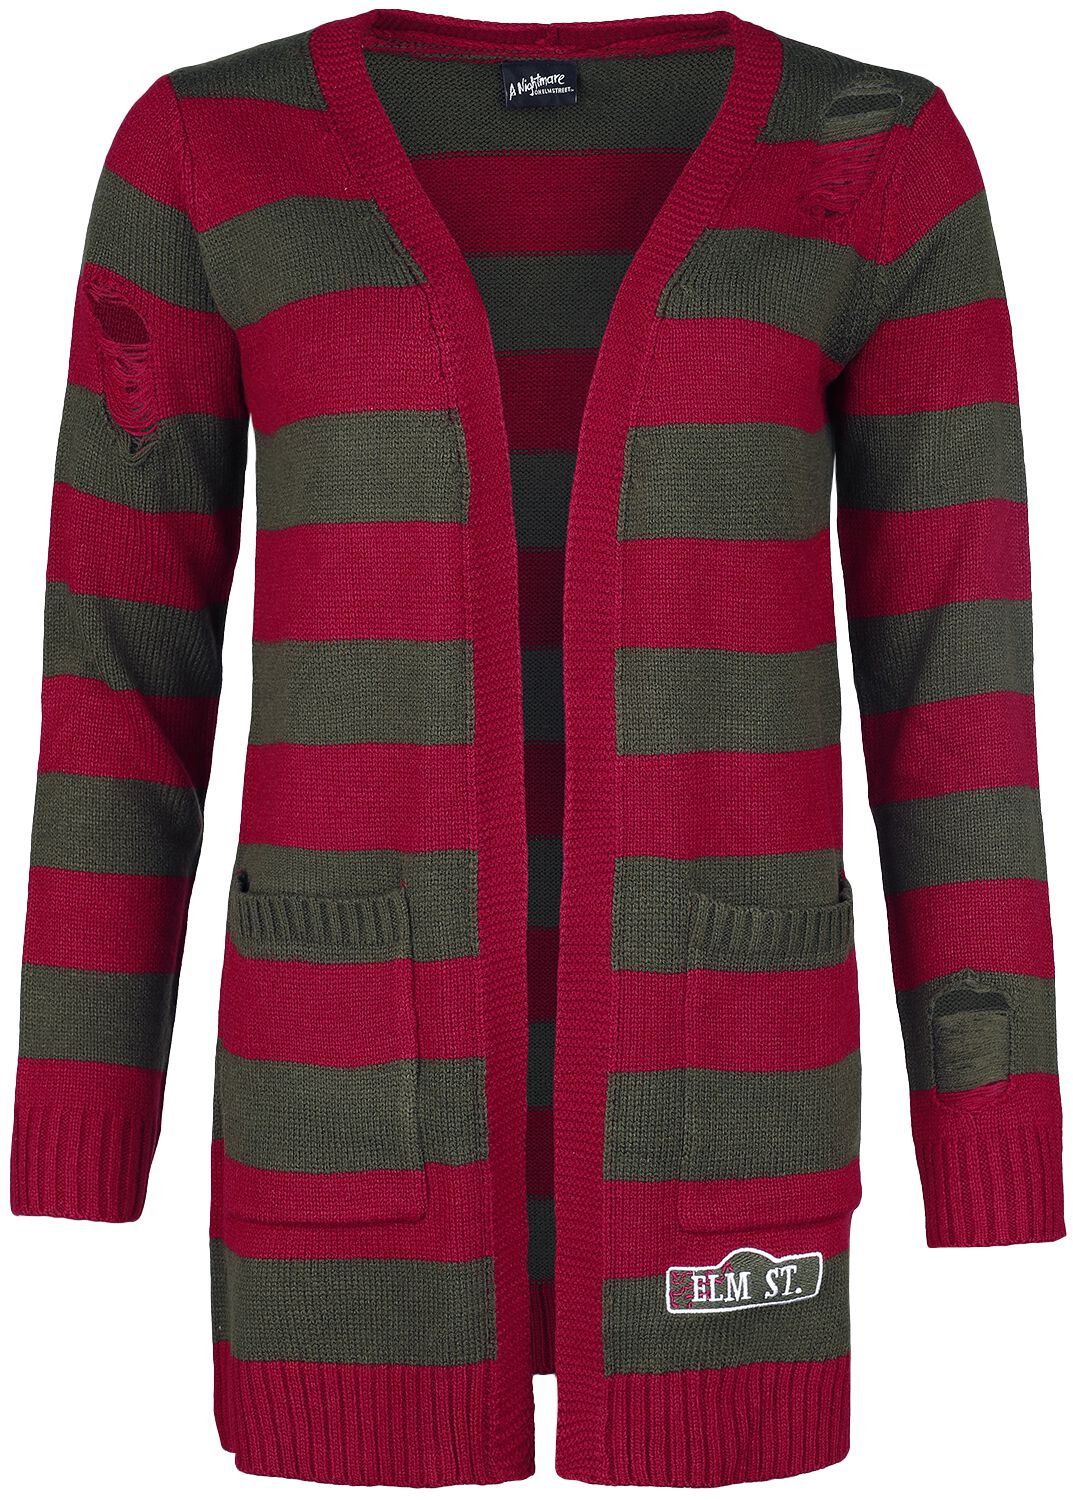 A Nightmare on Elm Street Cardigan - Elmstreet - S bis XXL - für Damen - Größe M - rot/grün  - EMP exklusives Merchandise!